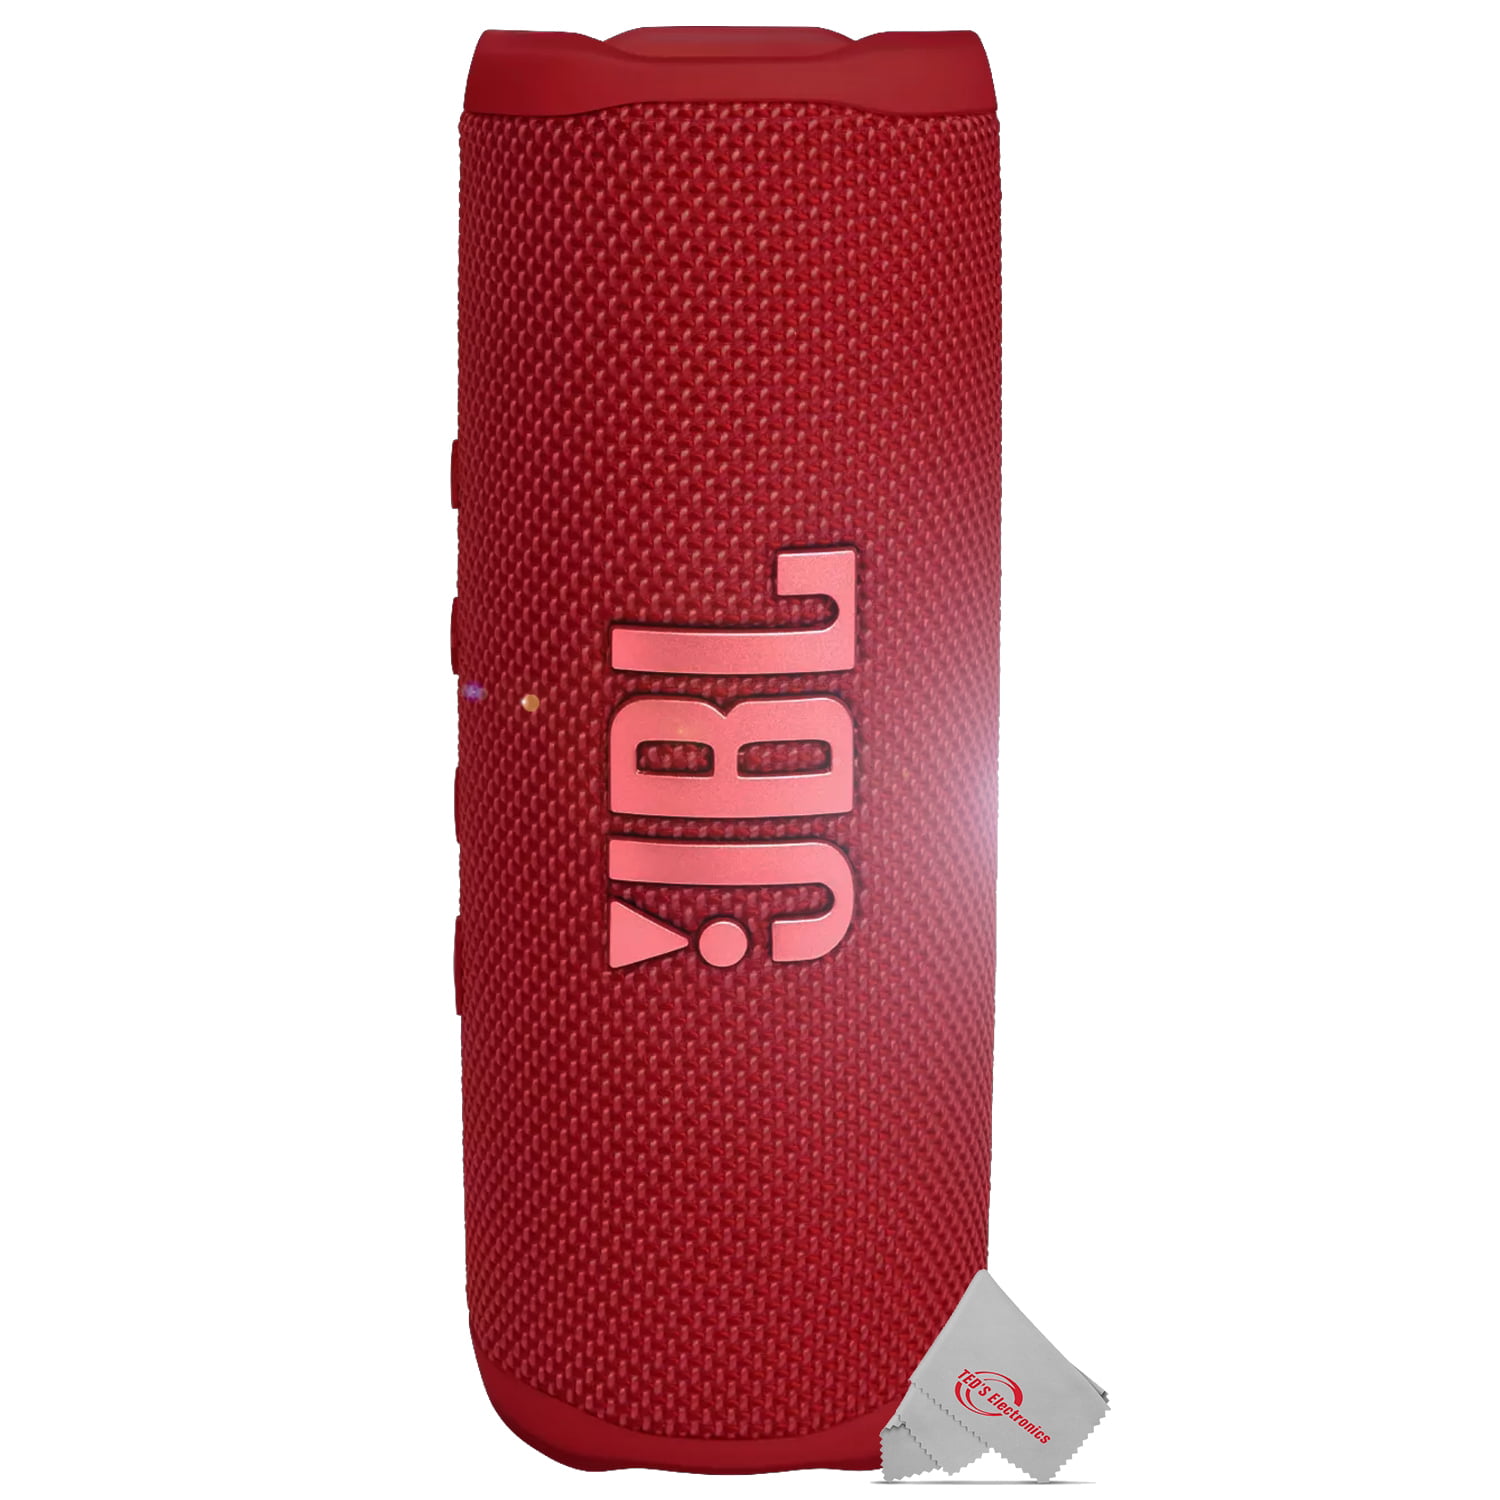 2x JBL FLIP 6 Wireless Portable Waterproof Speaker - Red